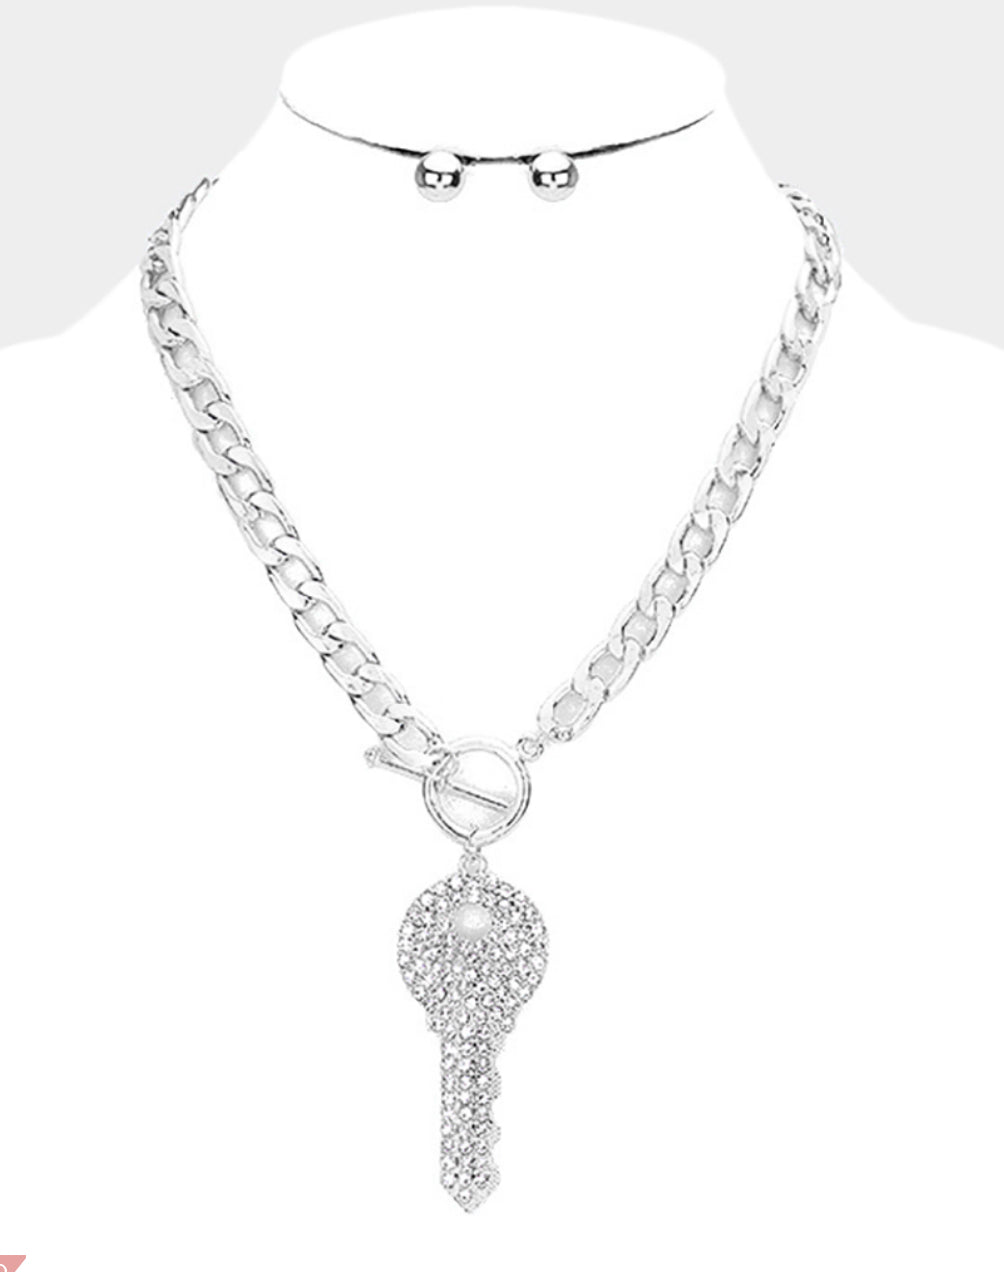 Silver Rhinestone Embellished Key Necklace